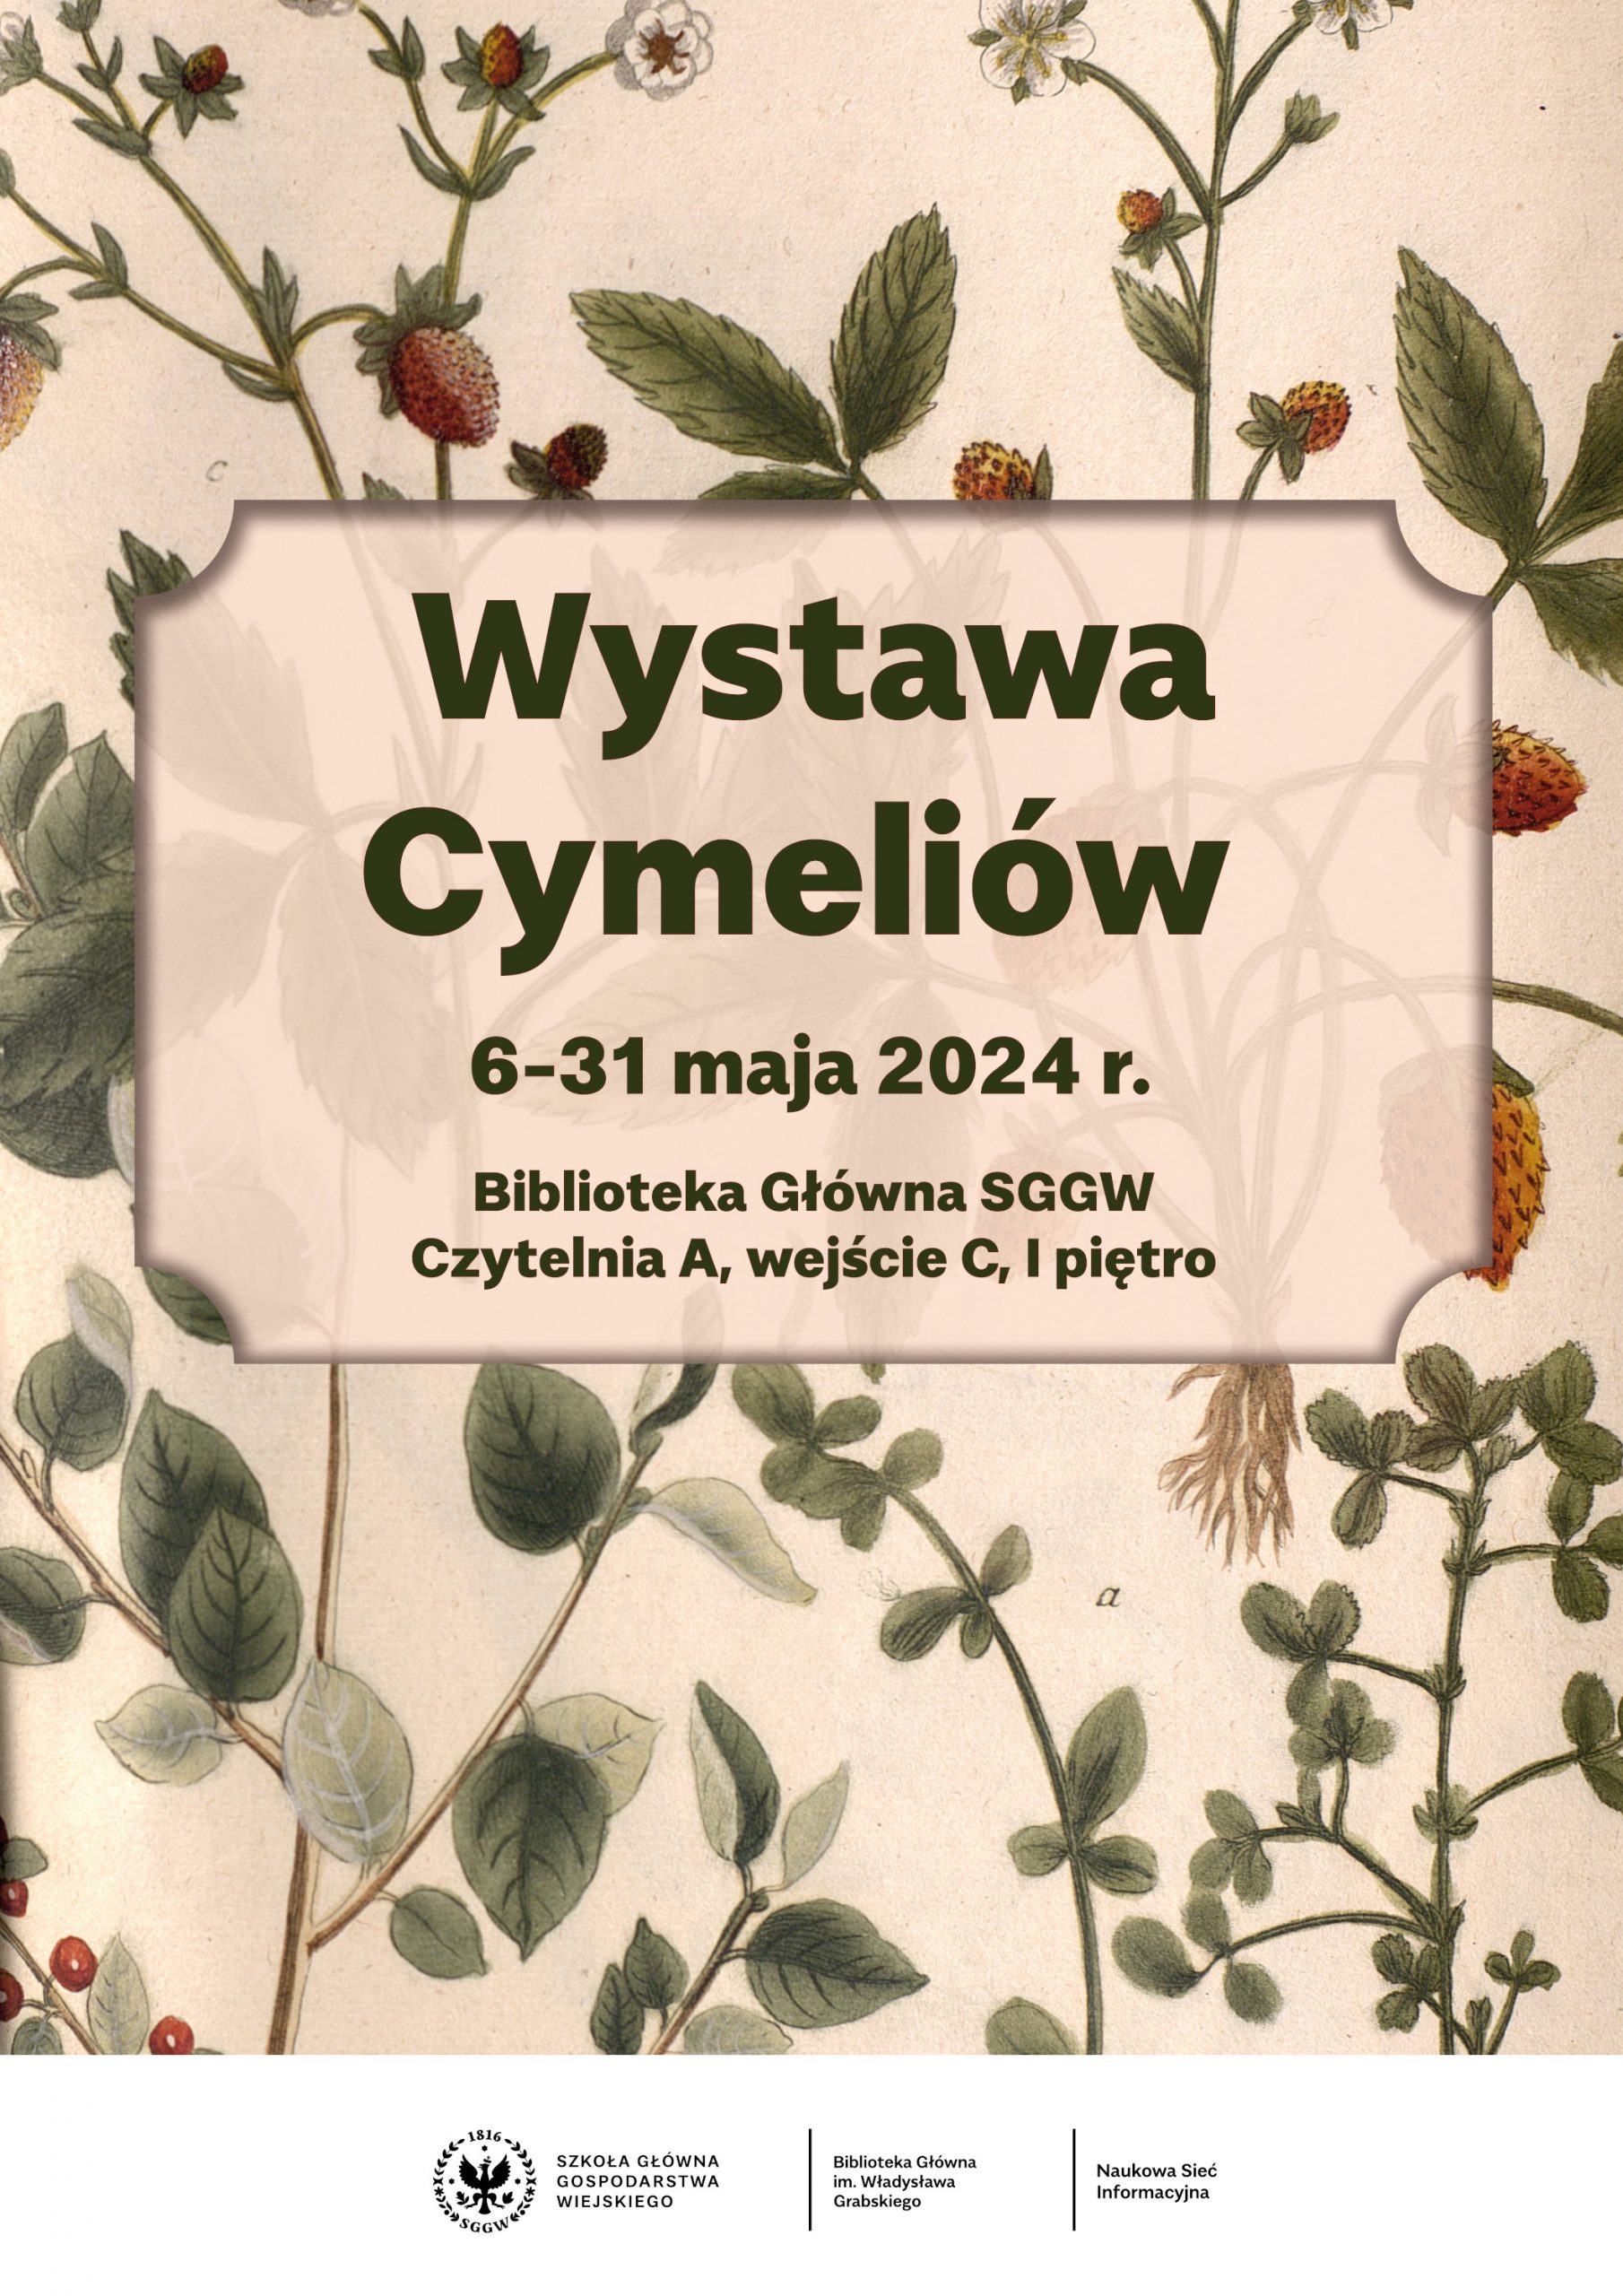 Napis "Wystawa Cymeliów. 6-21 maja 2024 r. Biblioteka Główna SGGW, Czytelnia A, wejście C, I piętro" na tle ryciny z zielnika przedstawiającej poziomki.